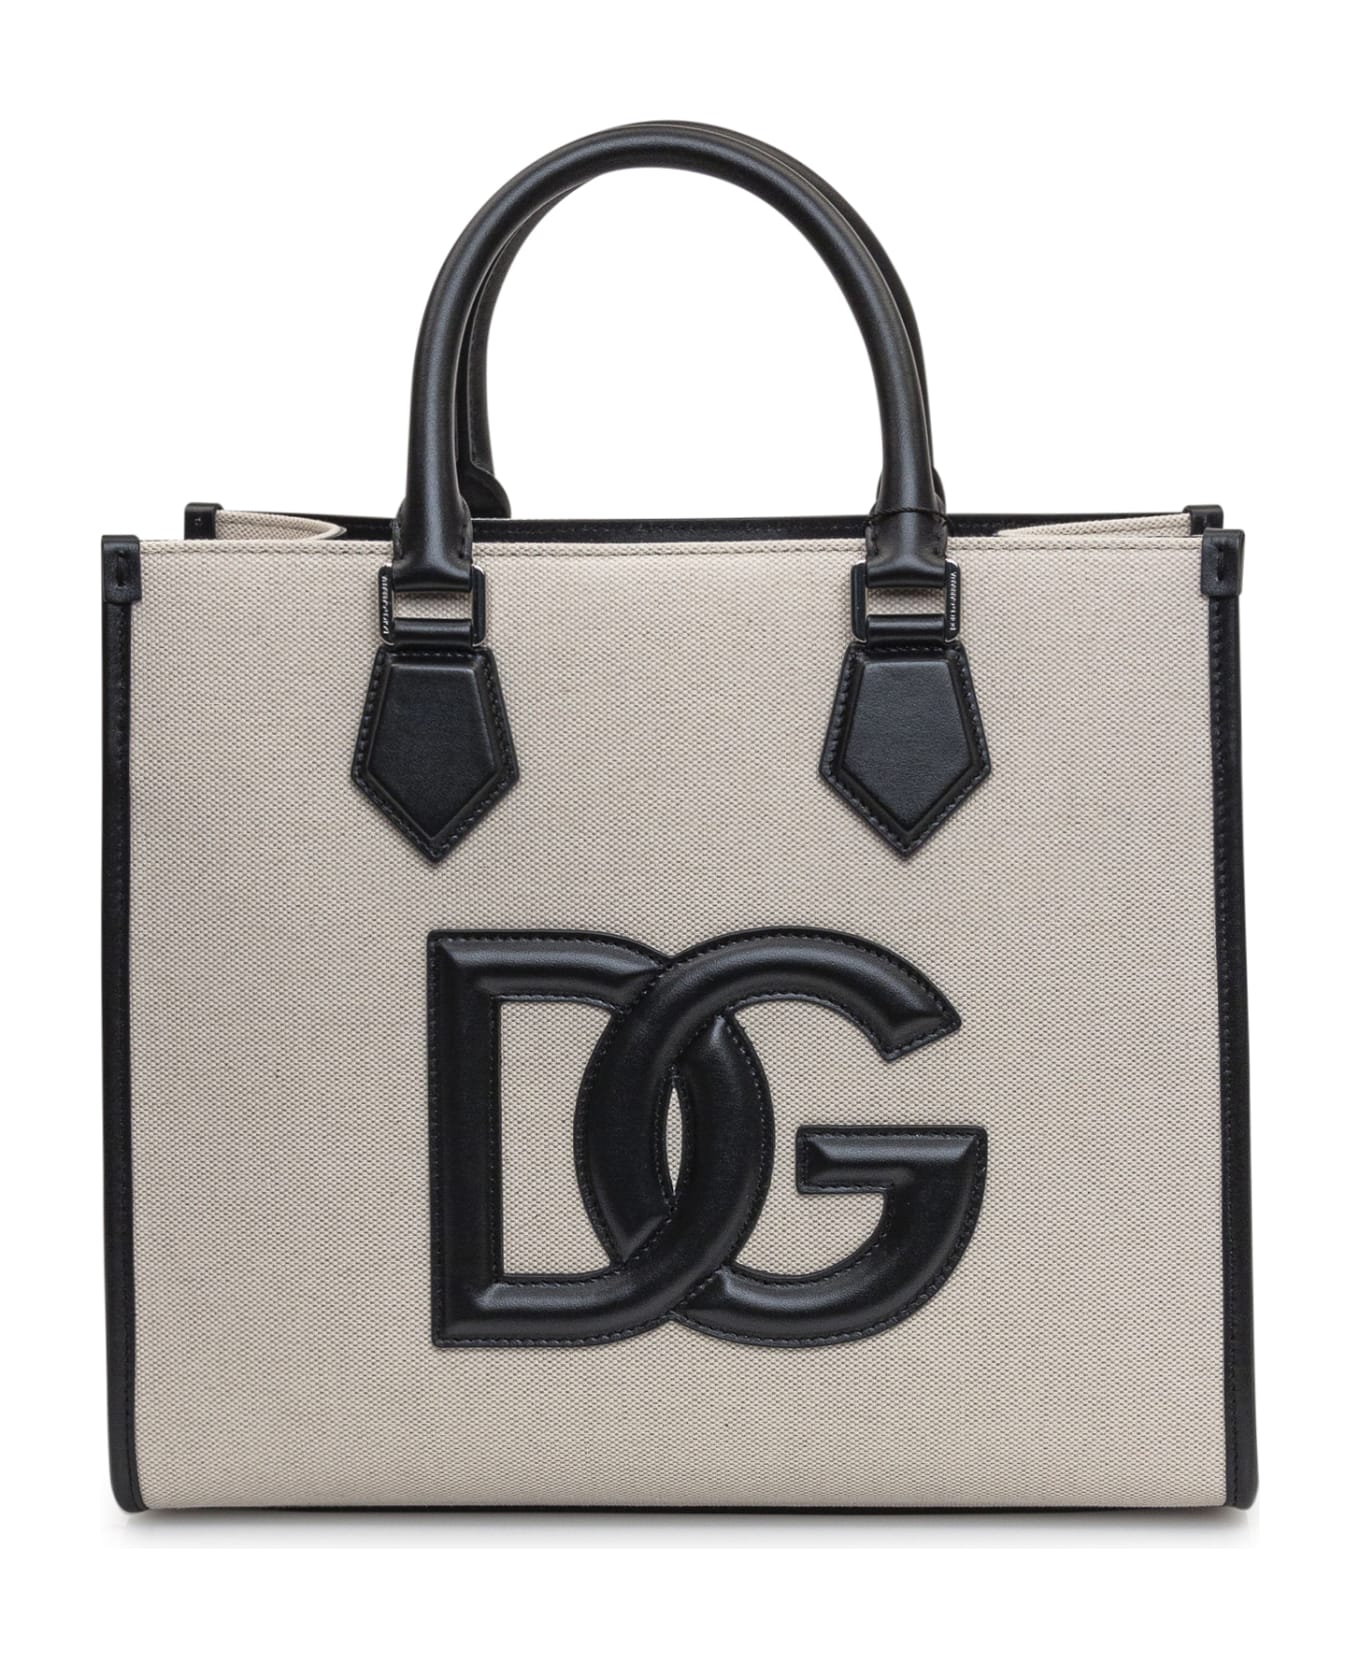 Dolce & Gabbana Shopping Bag - Avio トートバッグ